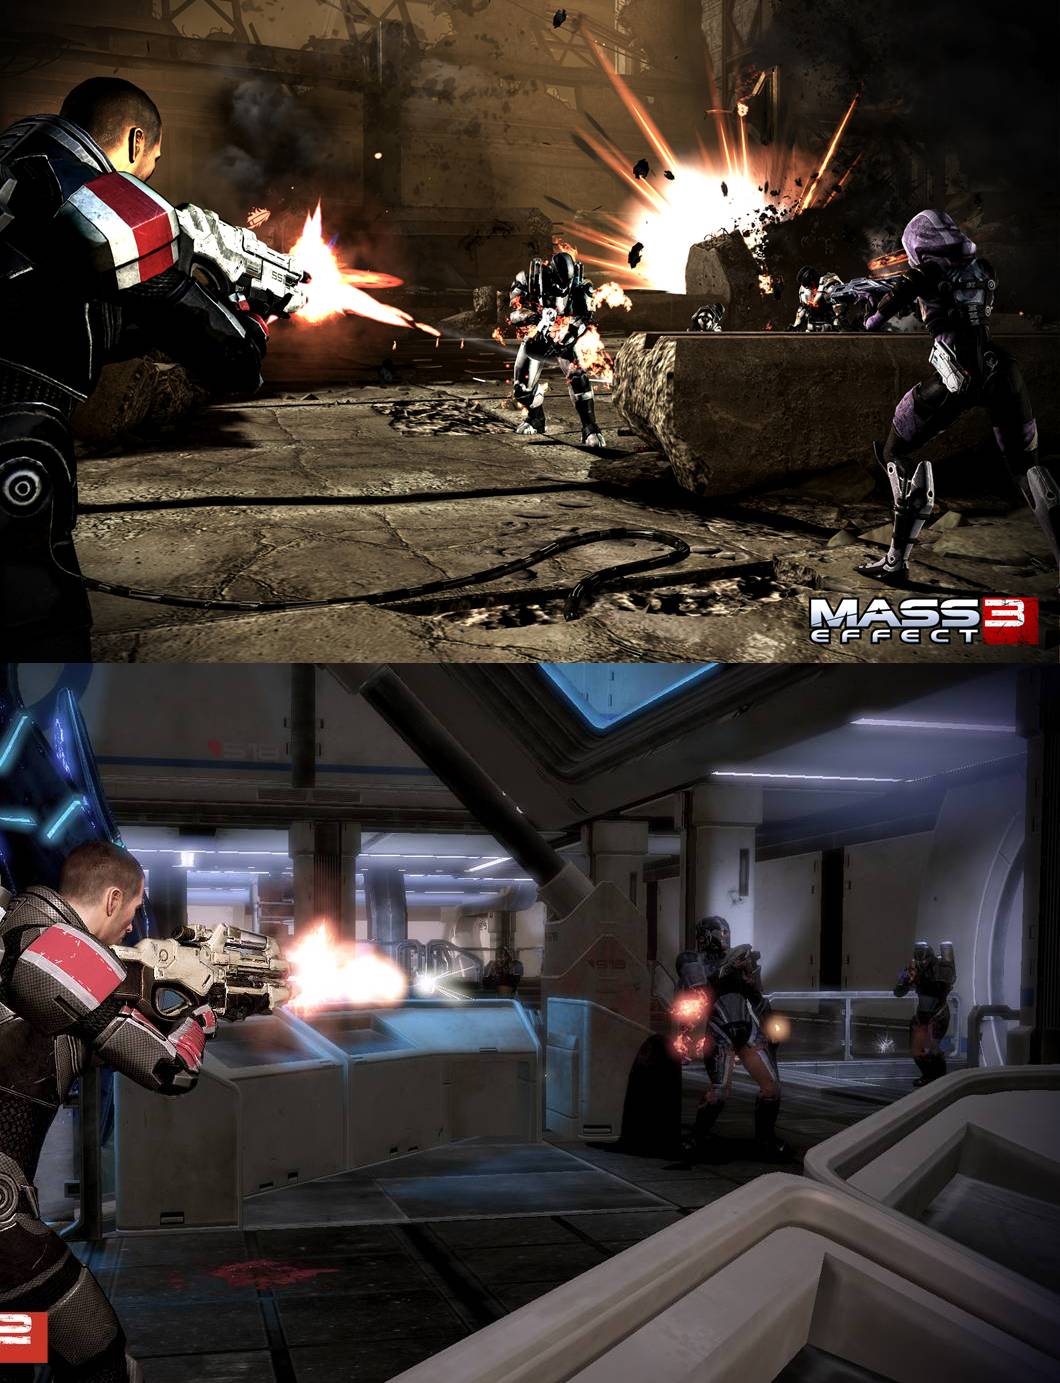 Komparasi Visual: Mass Effect 3 vs Mass Effect 2